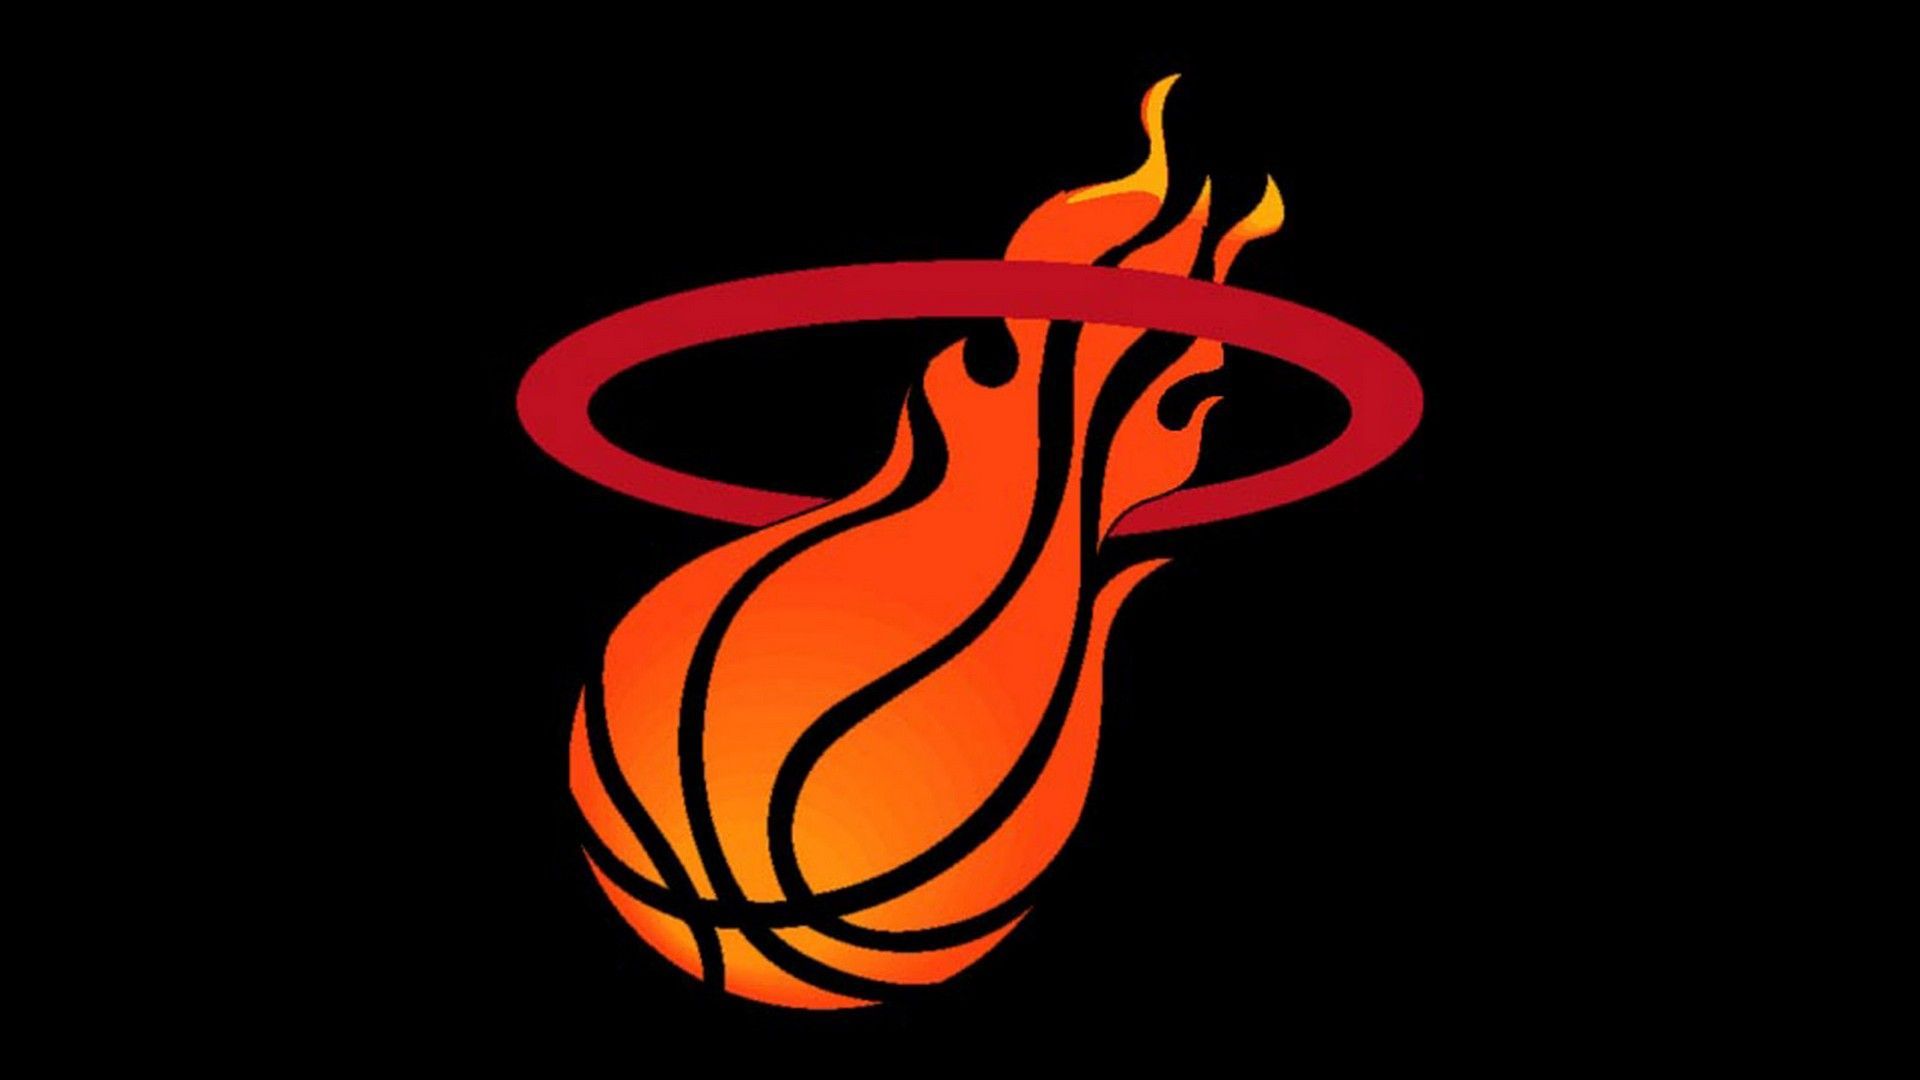 Miami Heat Mac Background. Miami heat logo, Miami heat, Miami